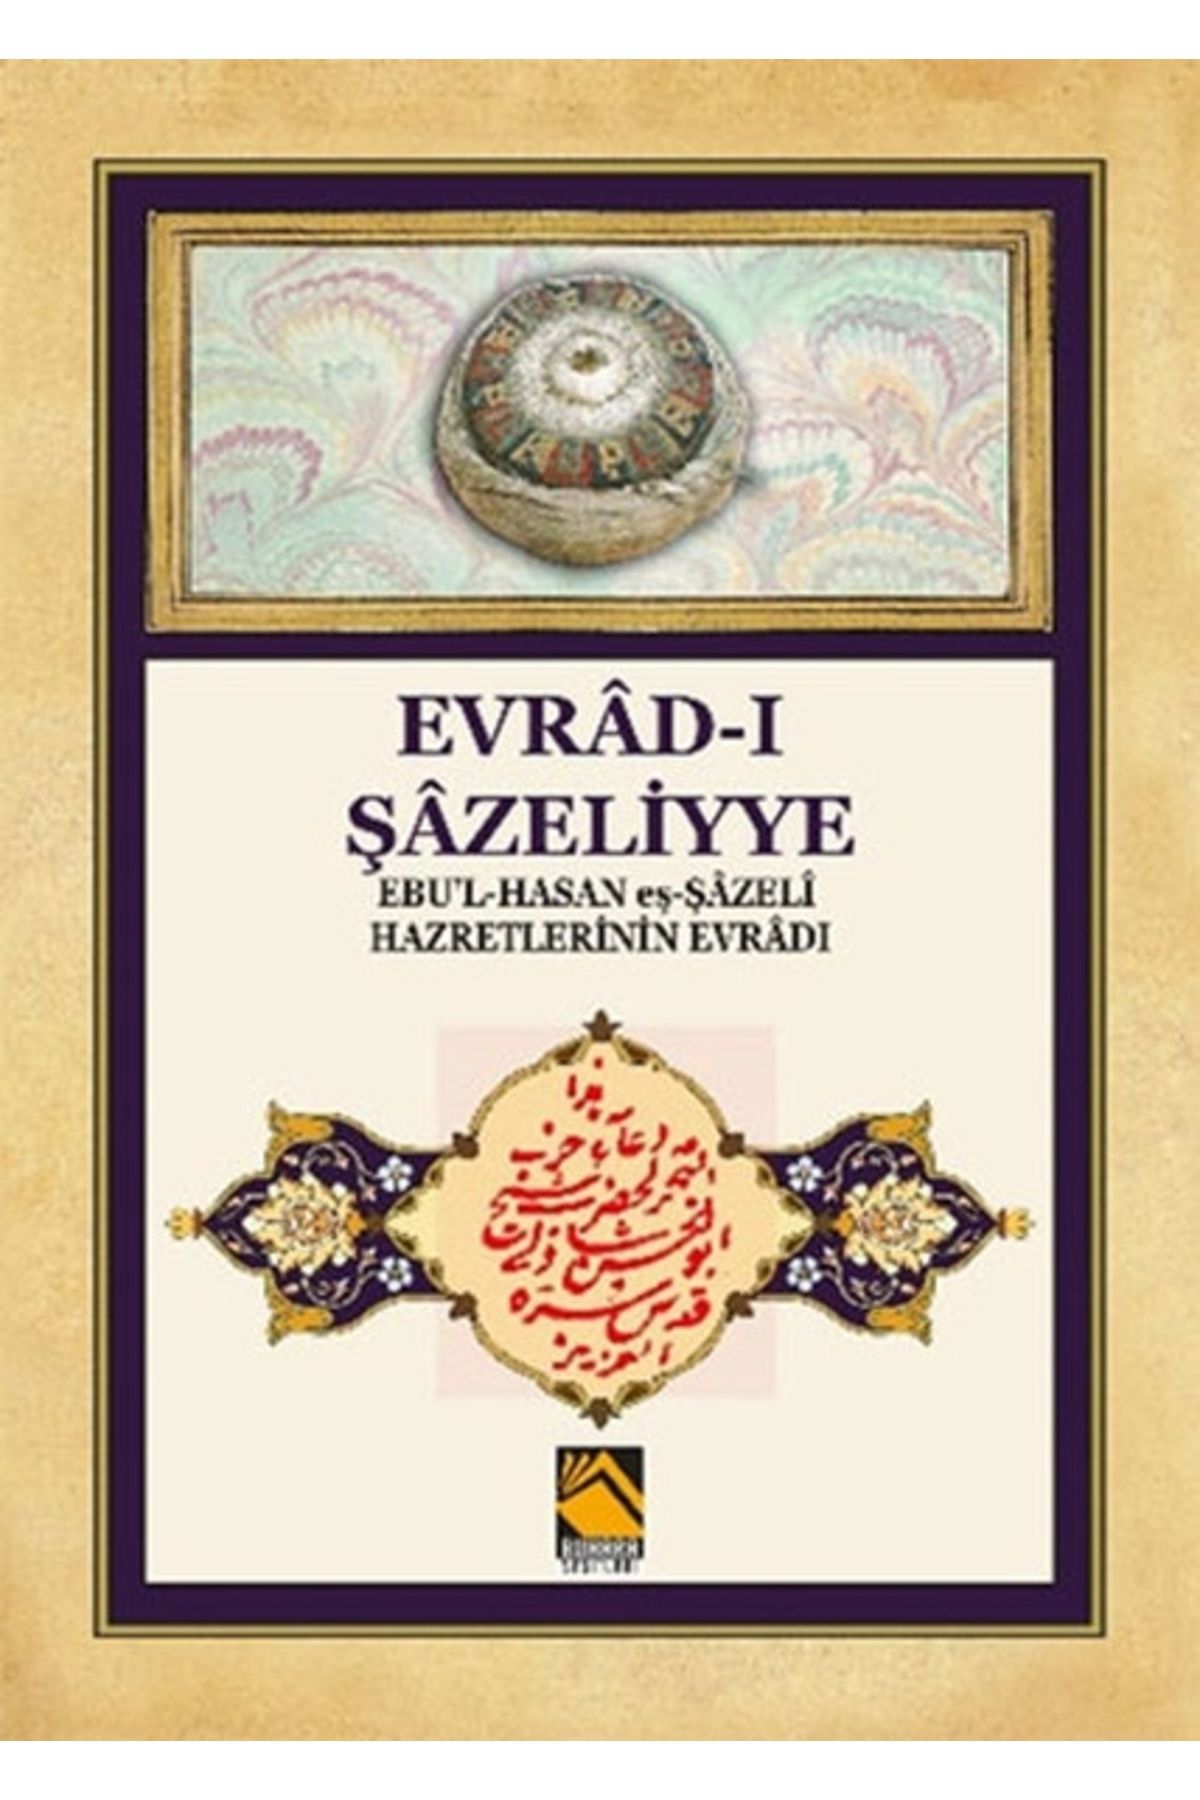 Buhara Yayınları Evrad-ı Şazeliyye - Ebu'l-hasan Eş-şazeli Hazretlerinin Evradı